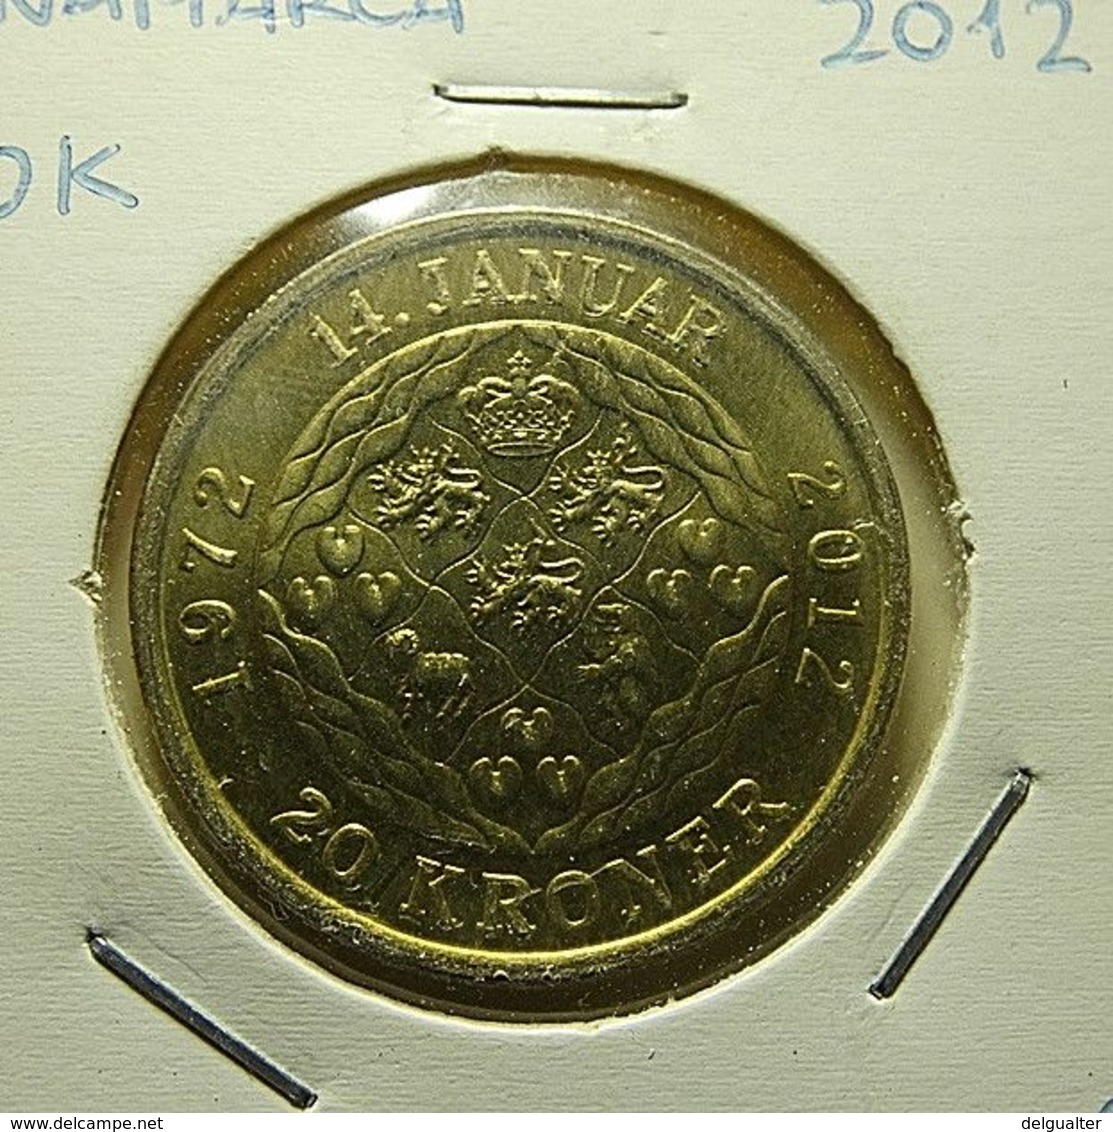 Denmark 20 Kroner 2012 - Danemark